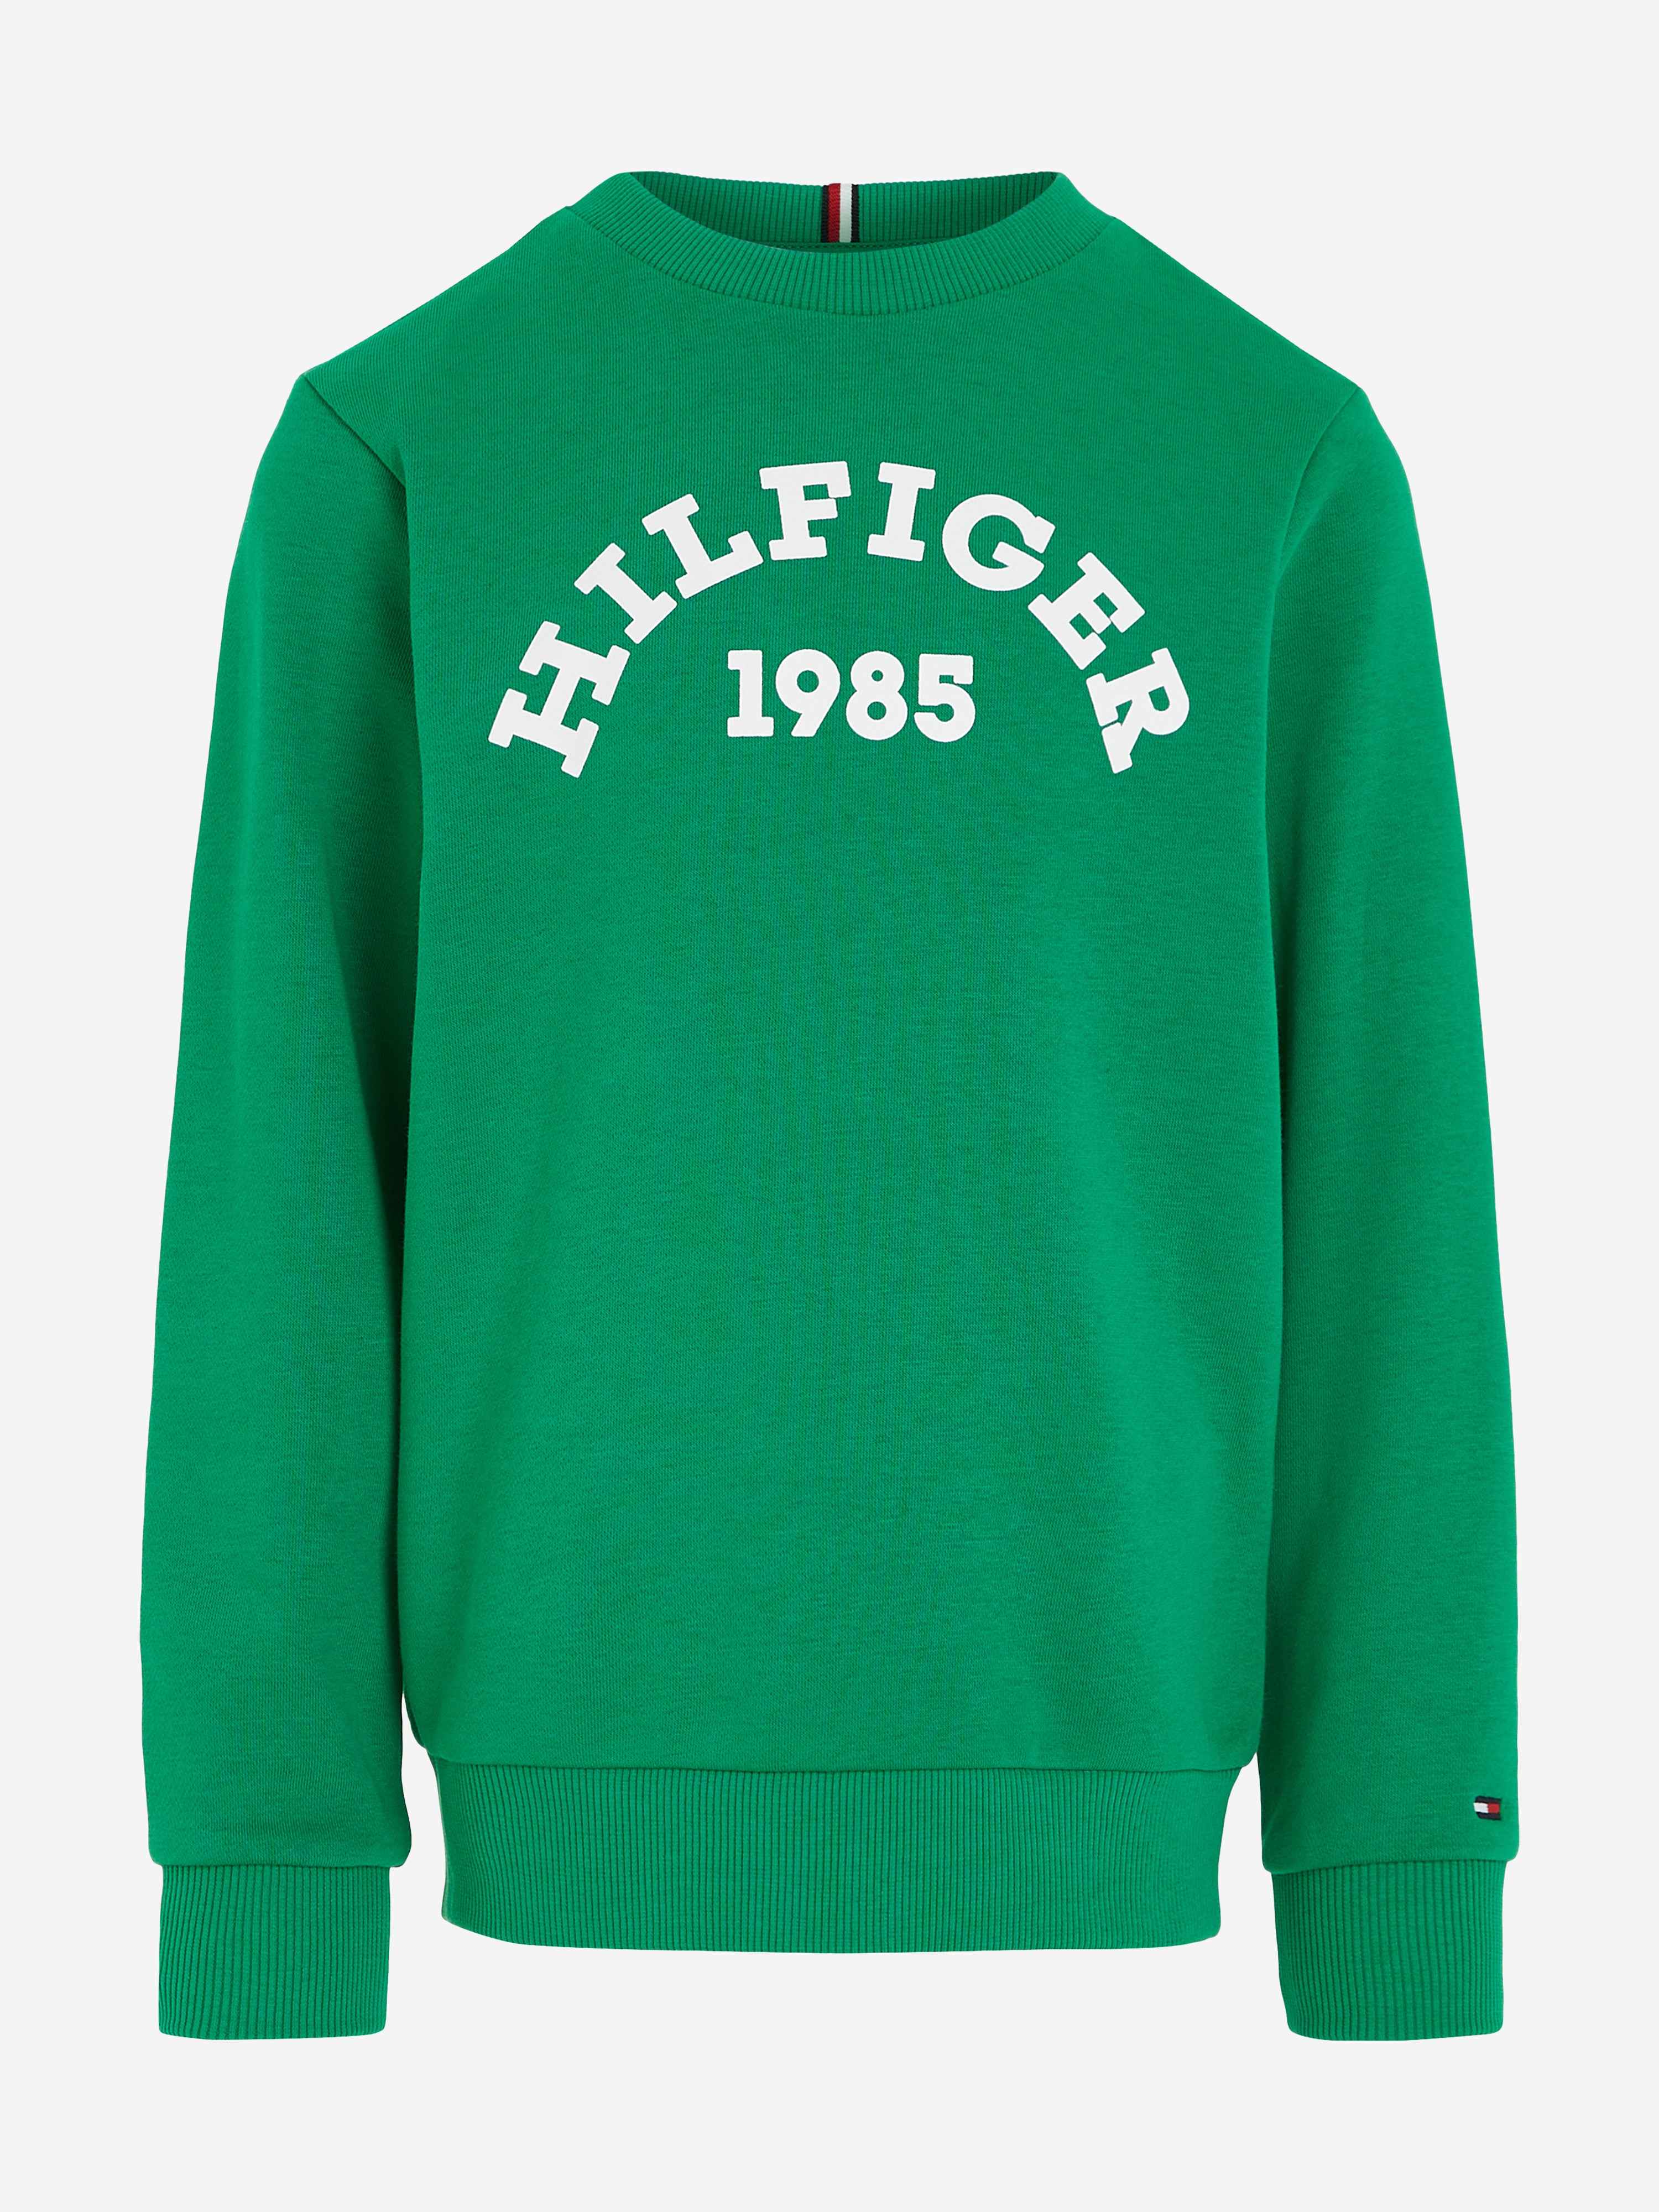 Tommy Hilfiger Kids' Boys 1985 Logo Sweatshirt In Green